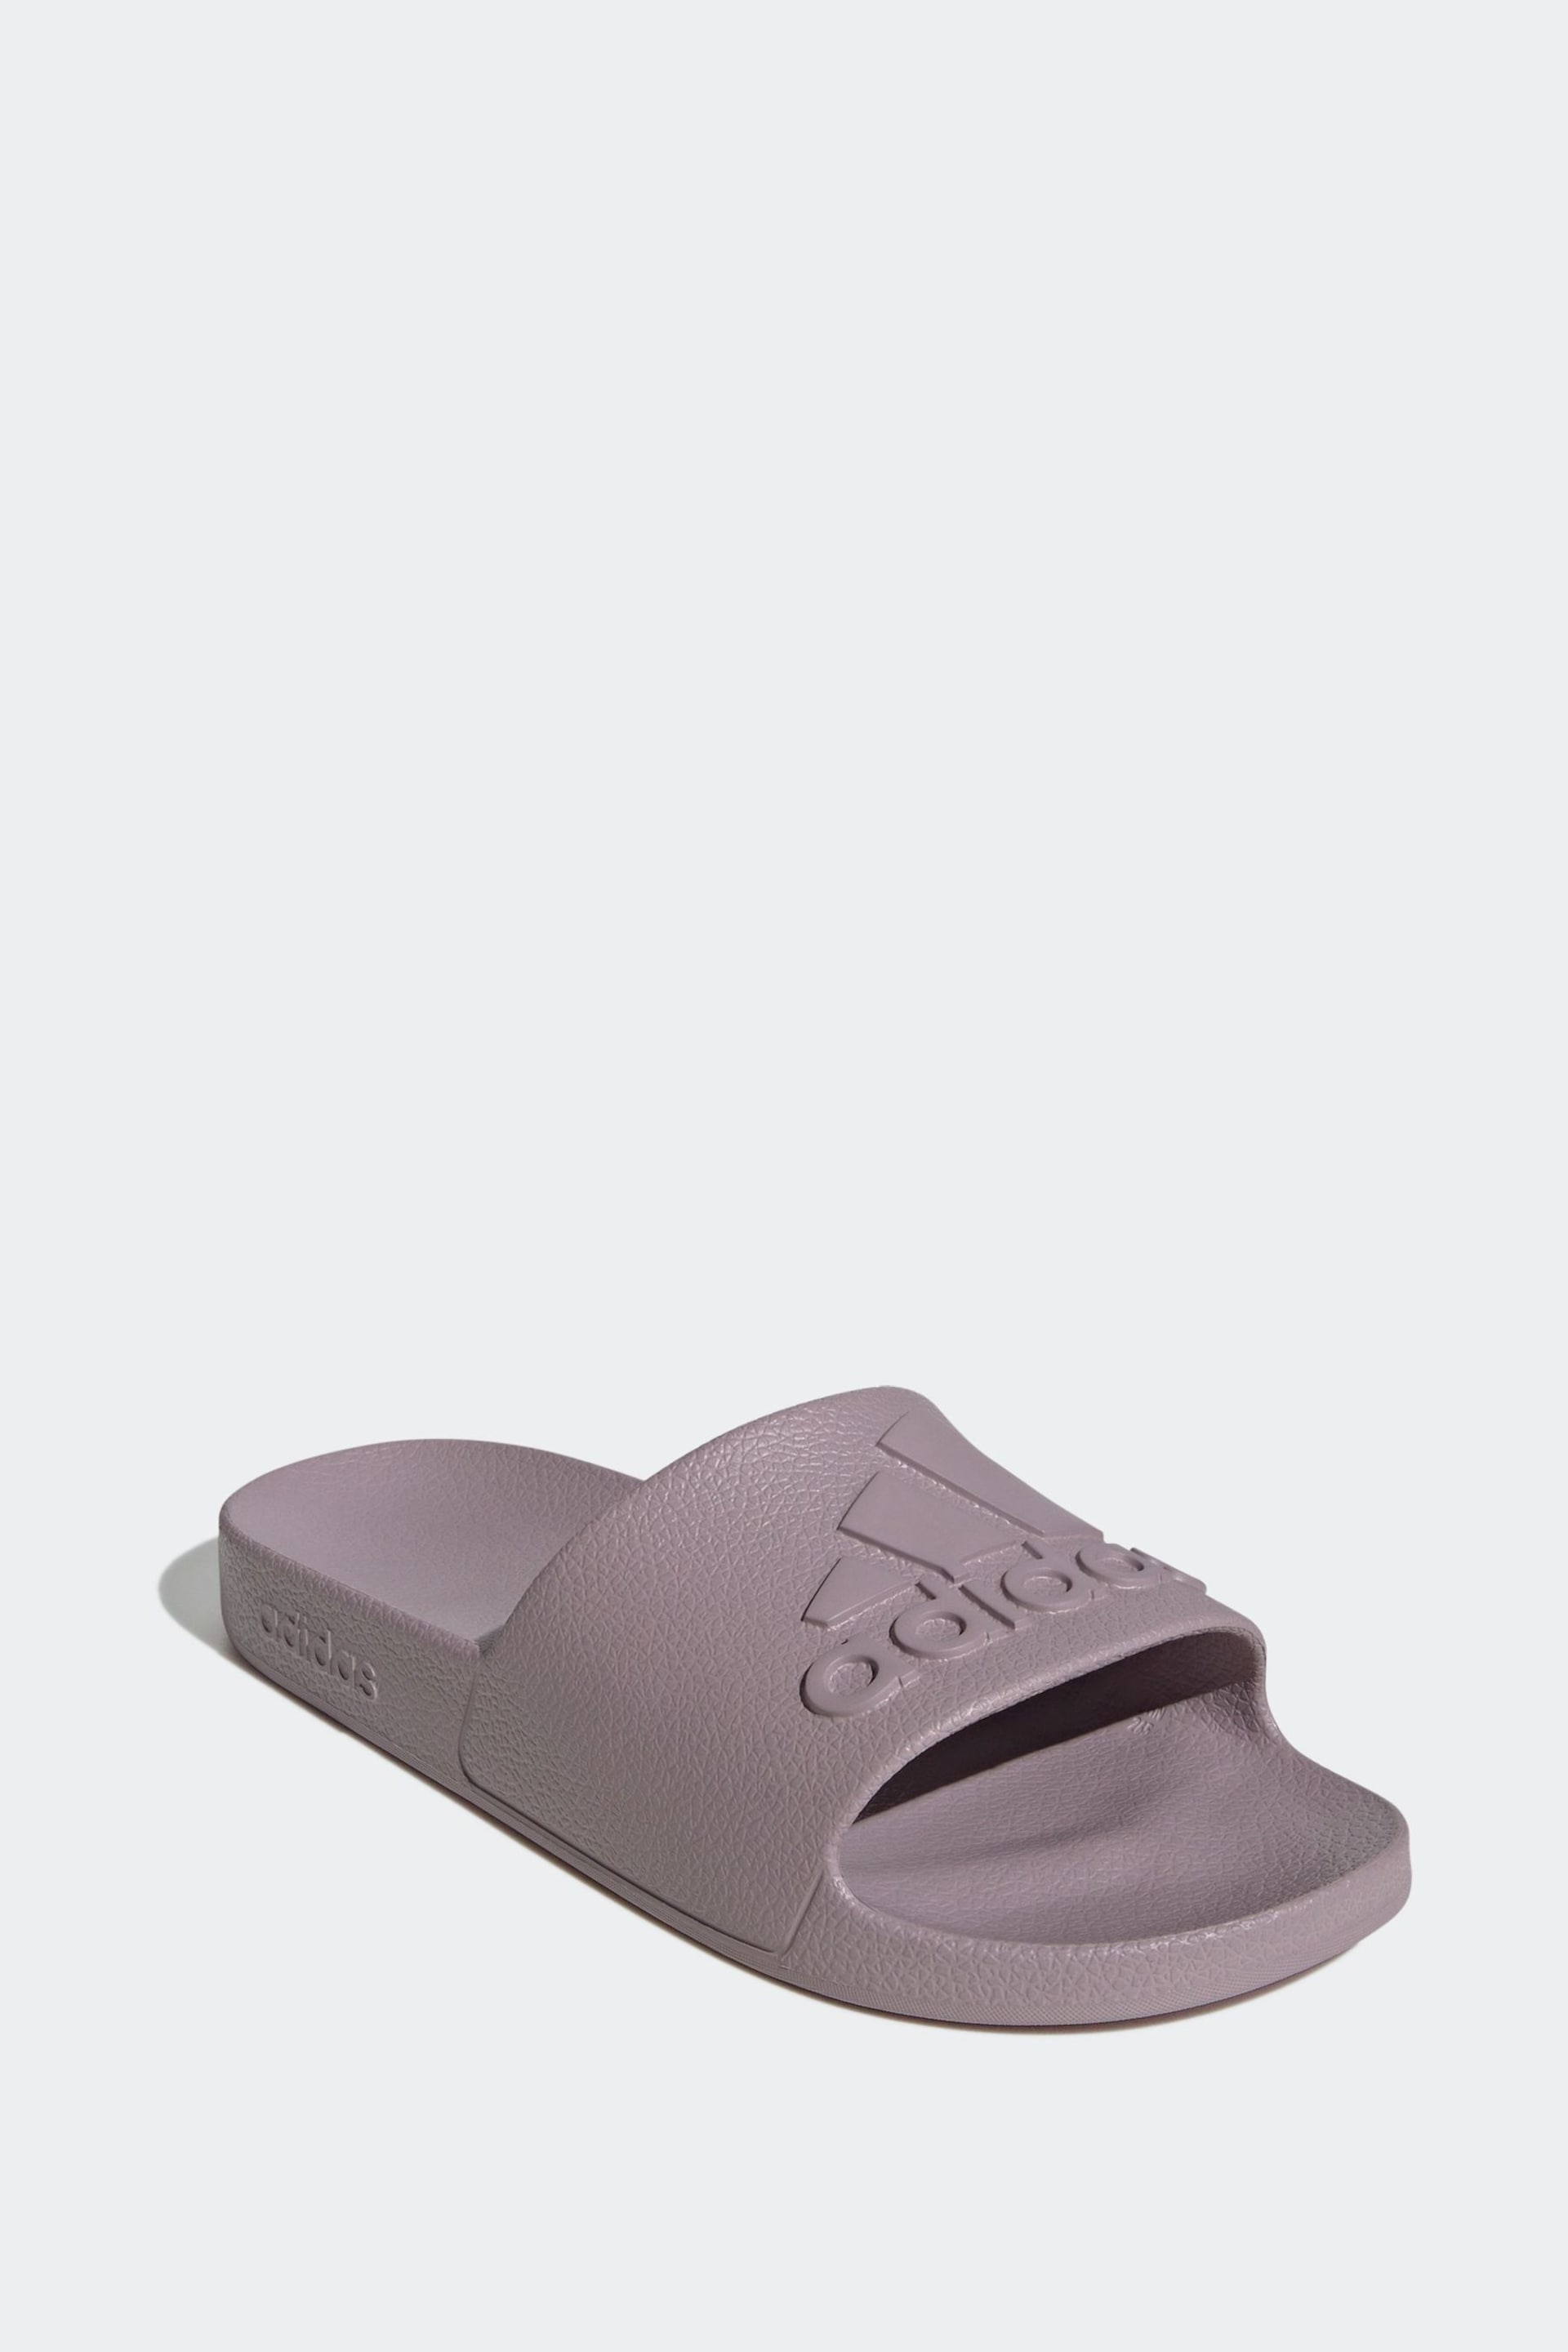 adidas Purple Sportswear Adilette Aqua Slides - Image 4 of 9